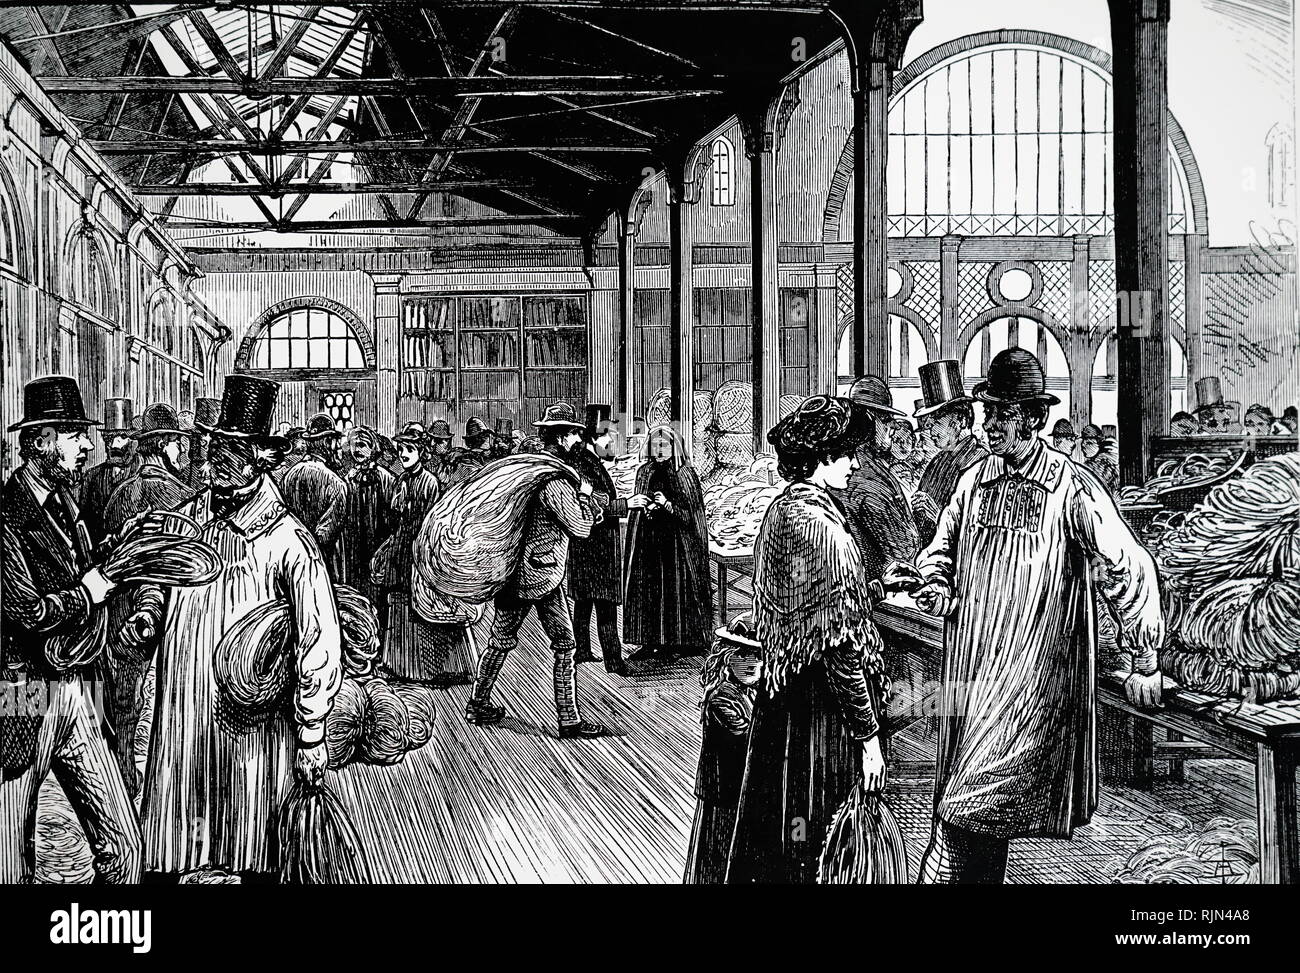 Ilustración que muestra la trenza hall, Luton 1878 Foto de stock